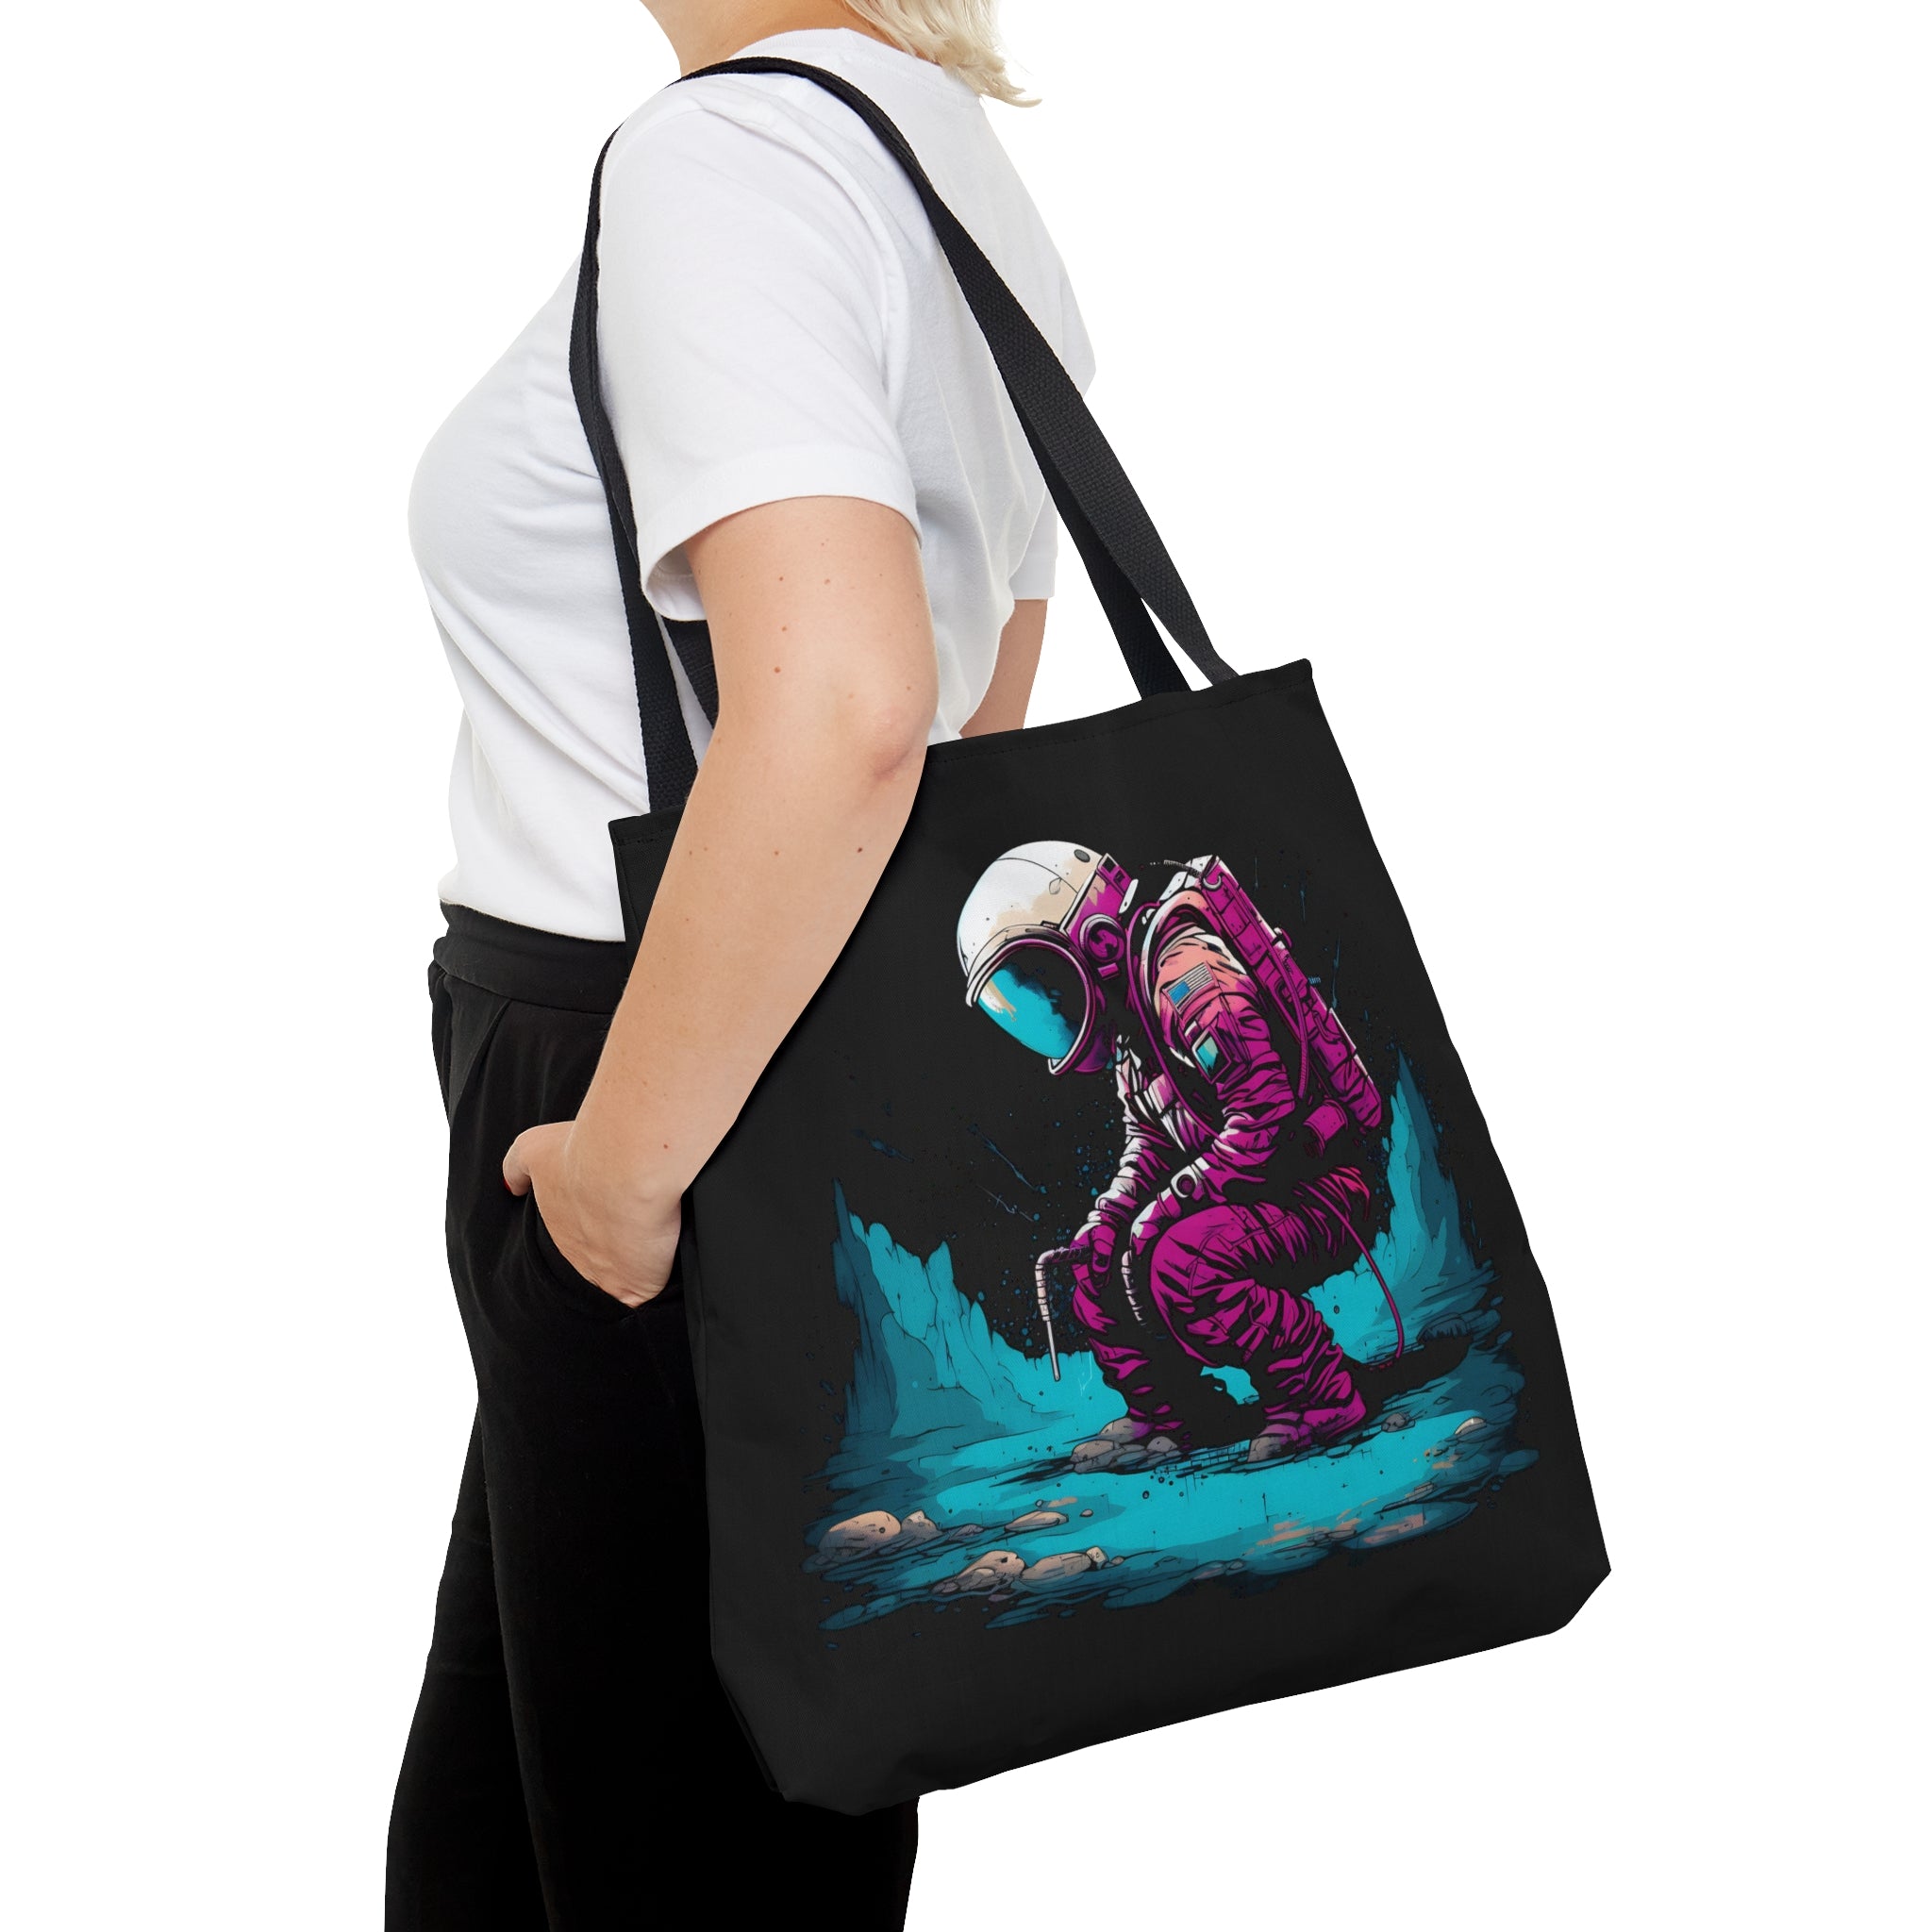 Cosmic Explorer Tote Bag